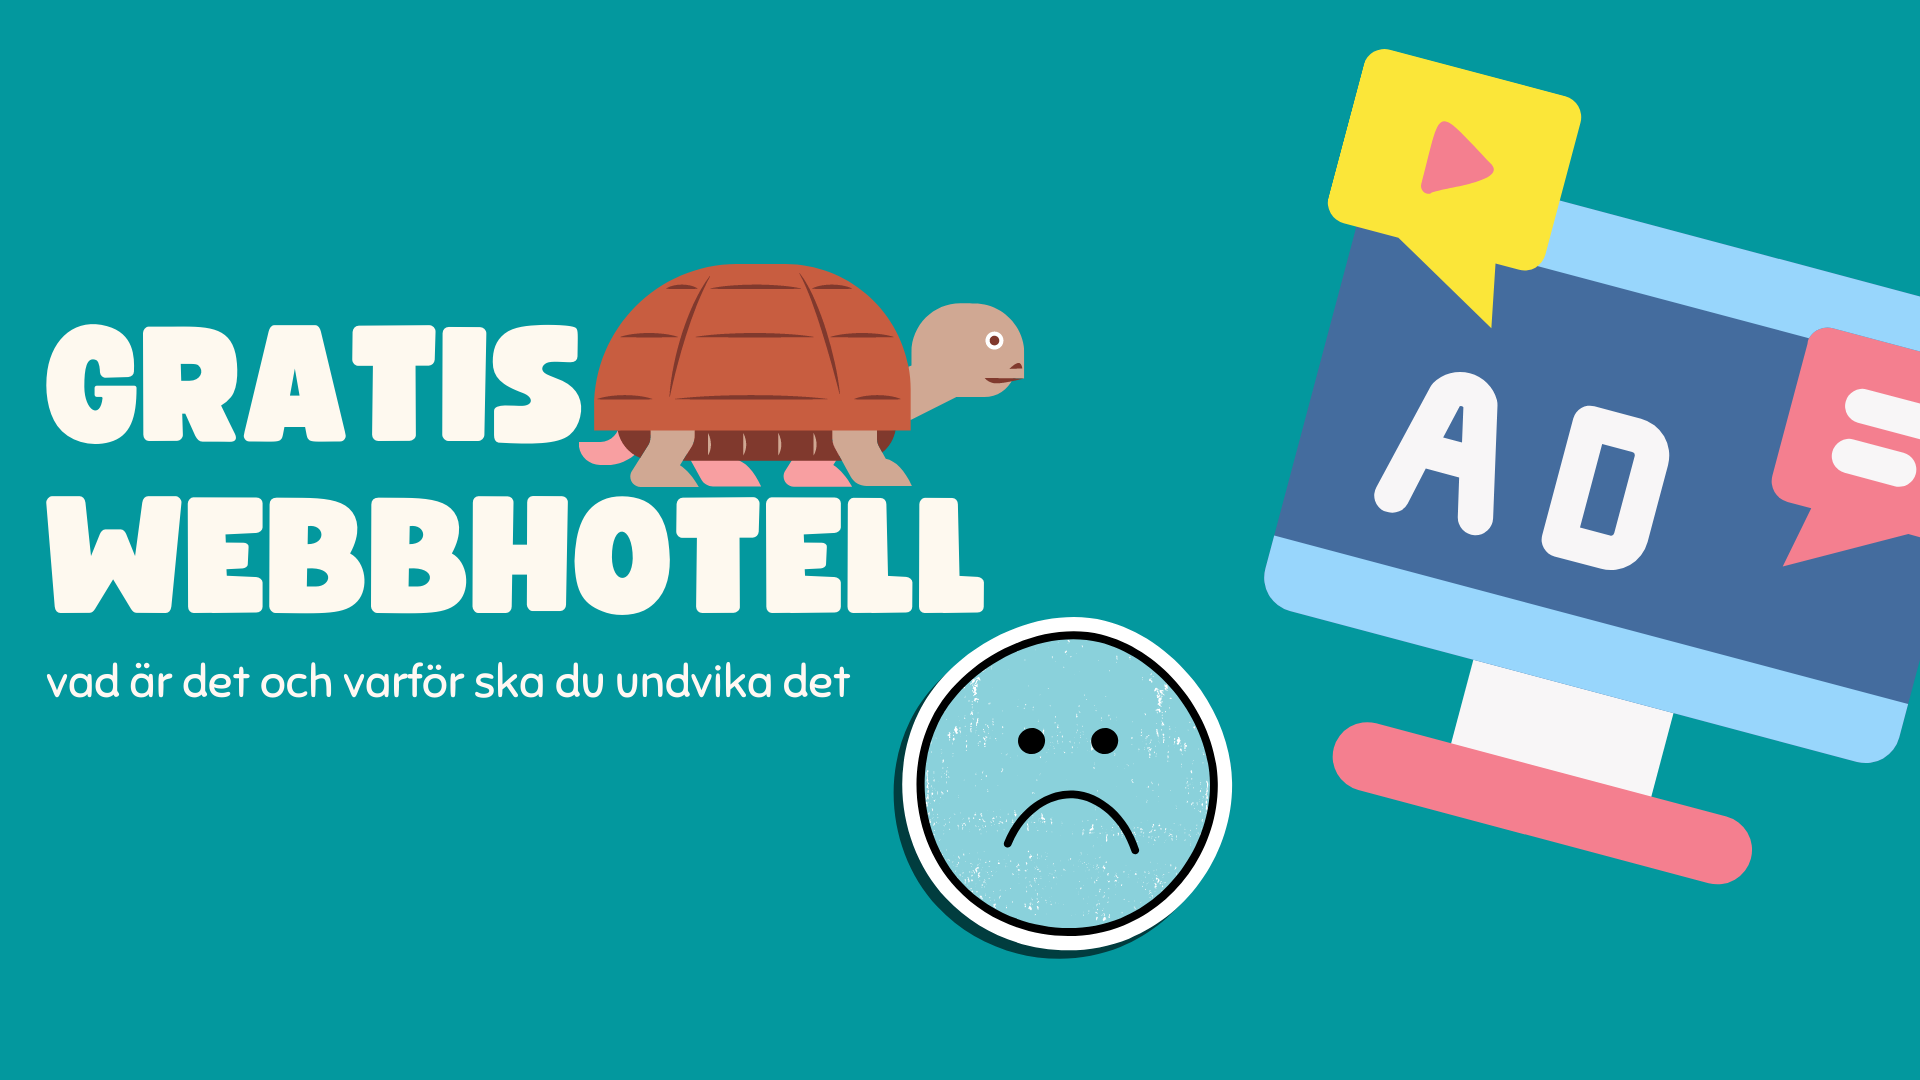 Bildtext ”gratis webbhotell” med en långsam sköldpadda ovanpå. Sköldpaddan tittar på annonser och en sur emoji syns nedan.